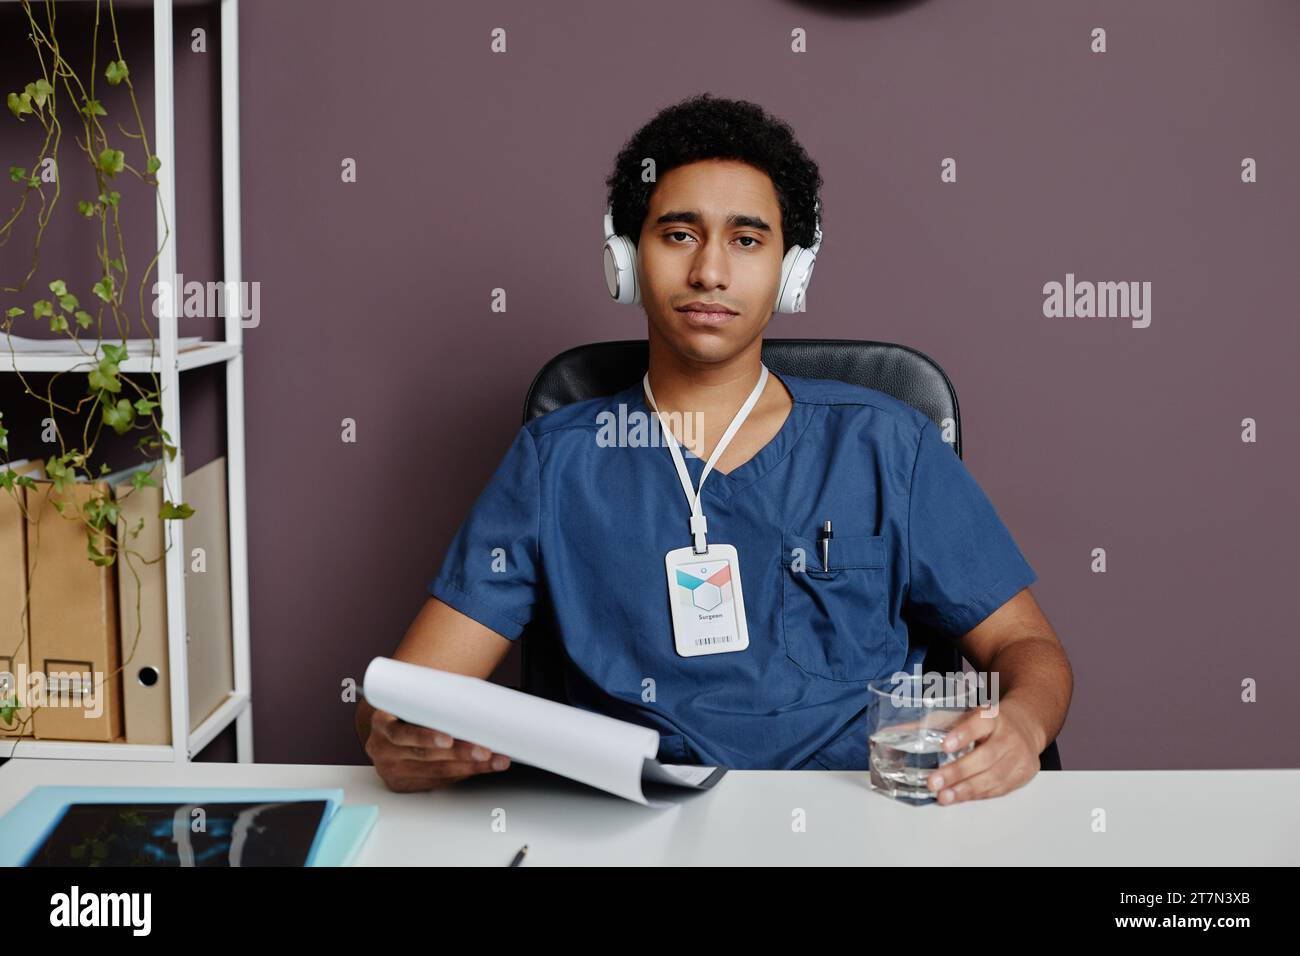 Ritratto frontale di un giovane uomo del Medio Oriente come medico maschio seduto alla reception in ufficio e indossando cuffie a cancellazione di rumore Foto Stock